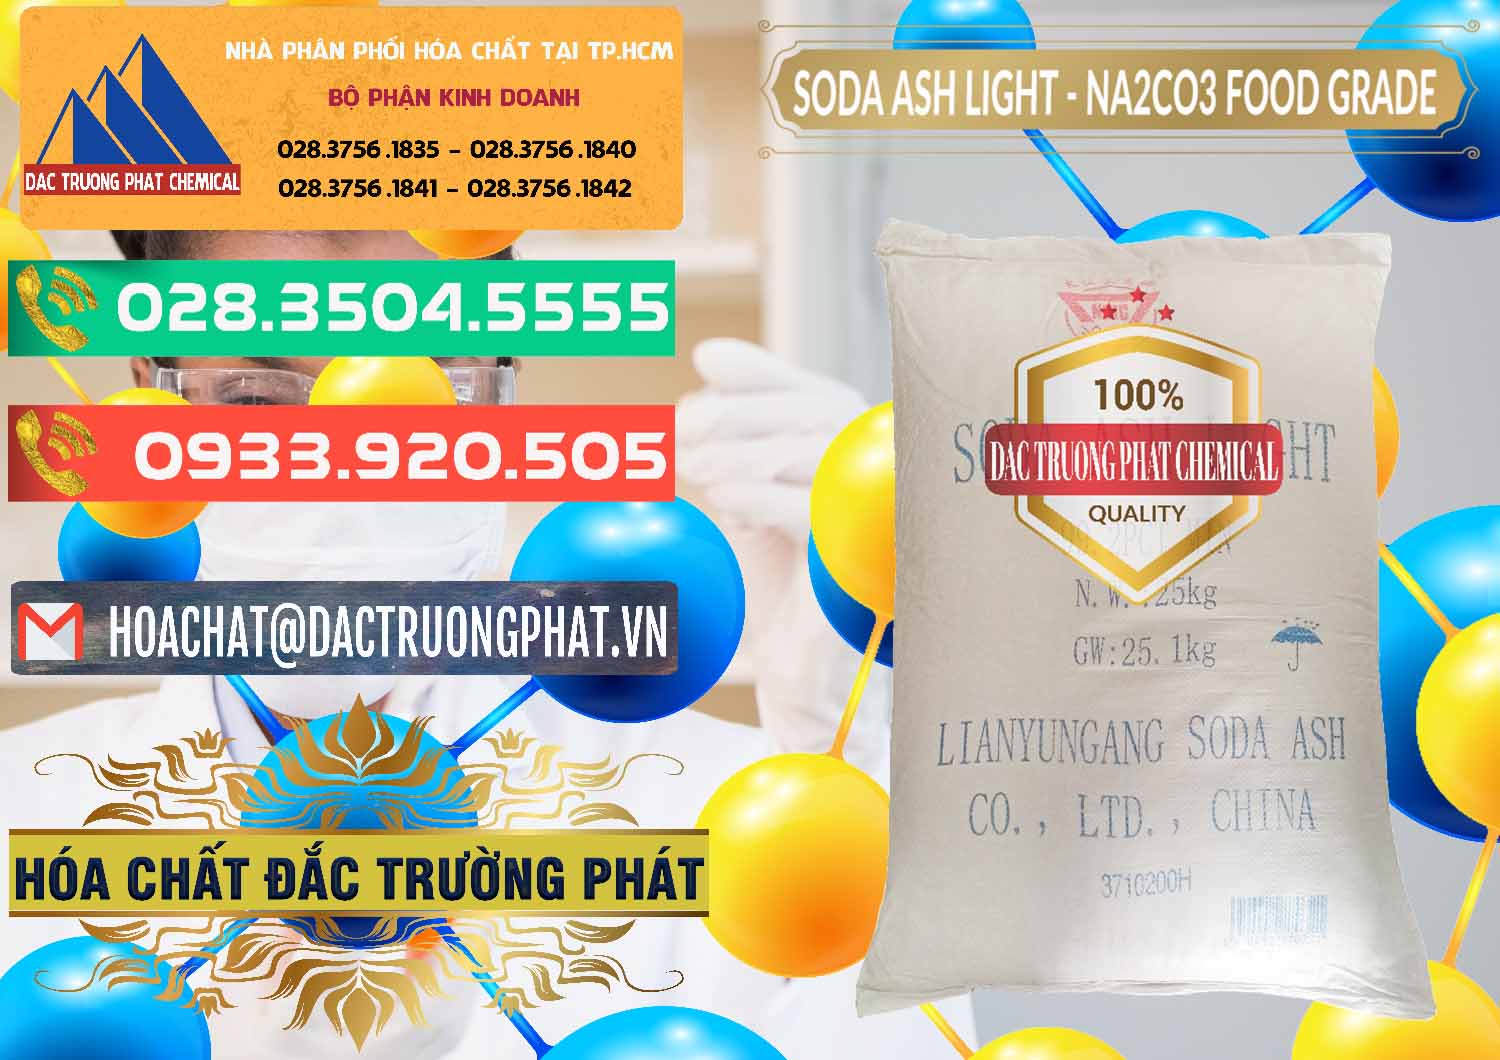 Cty bán & cung cấp Soda Ash Light – NA2CO3 Food Grade Trung Quốc China - 0127 - Đơn vị chuyên cung cấp - kinh doanh hóa chất tại TP.HCM - congtyhoachat.com.vn